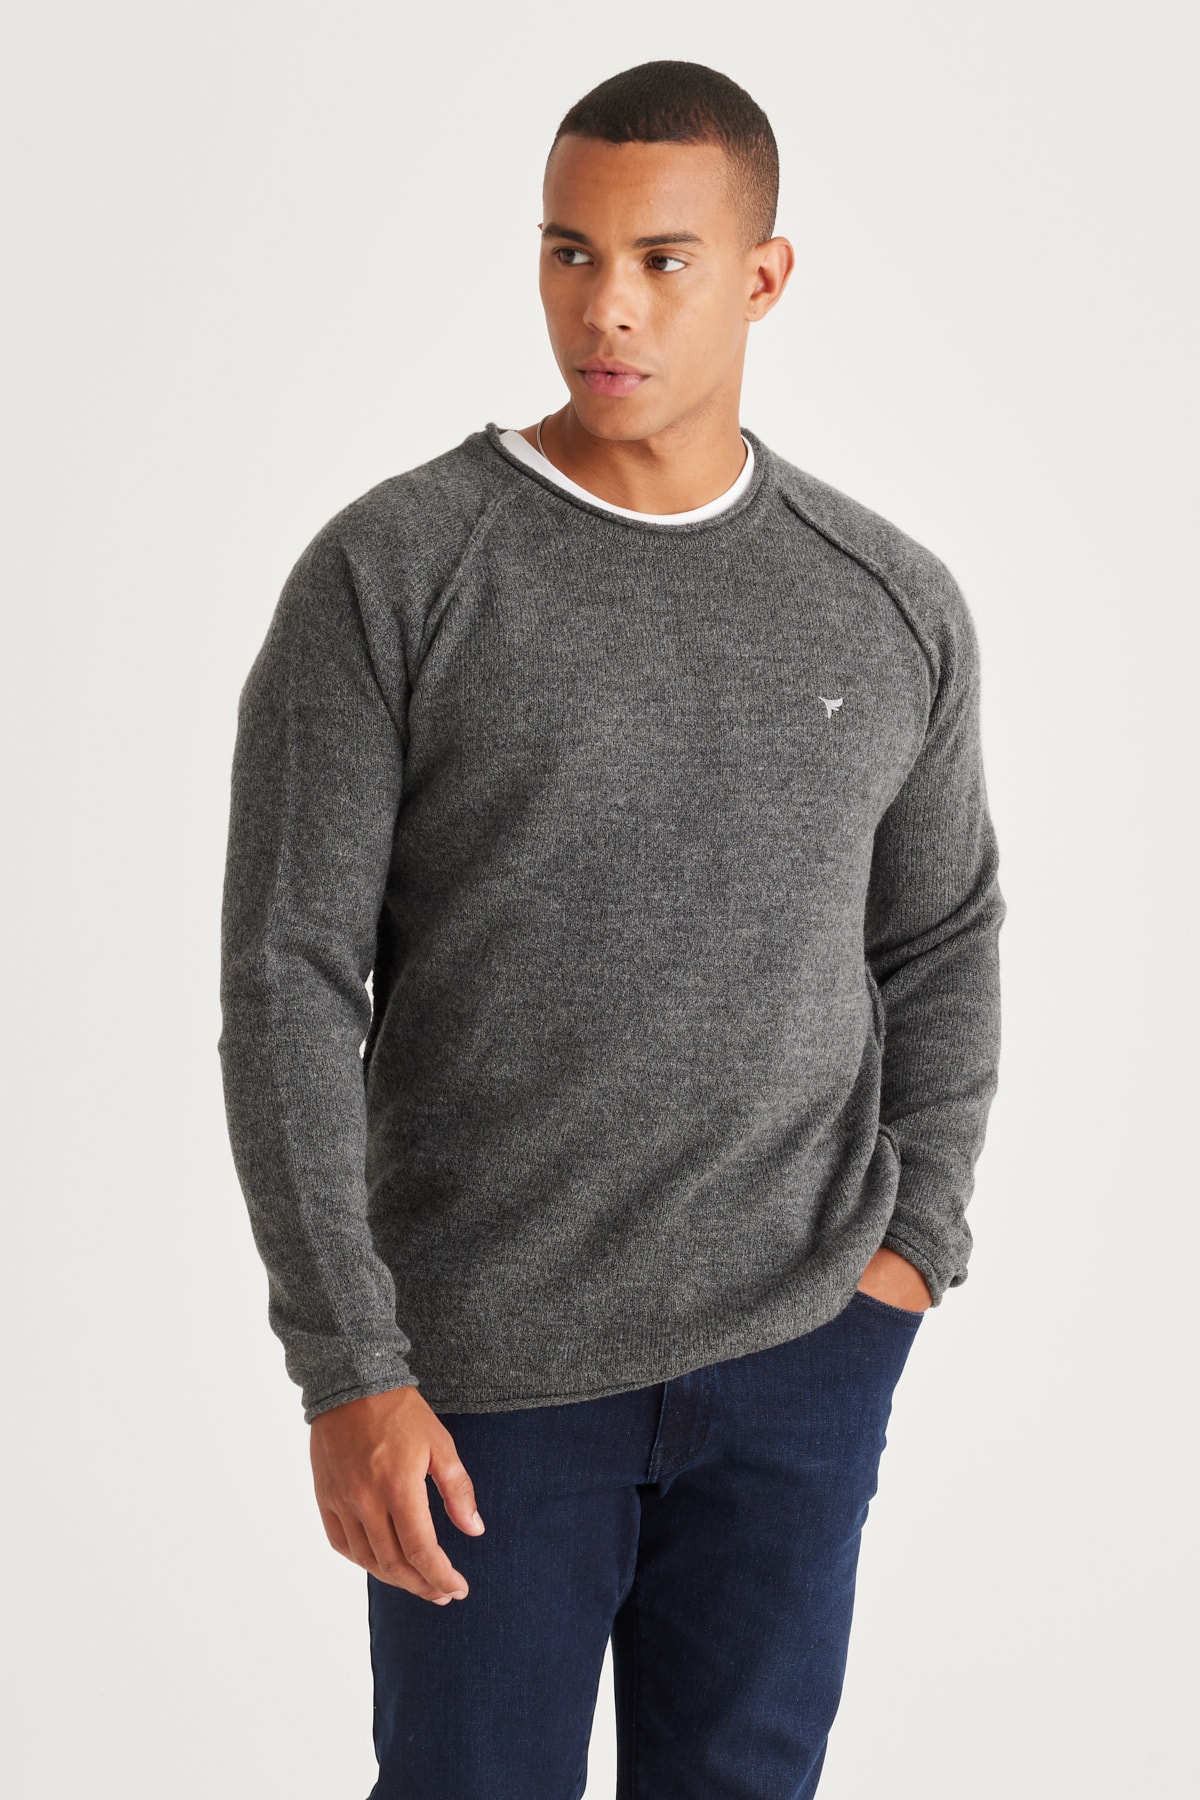 Levně AC&Co / Altınyıldız Classics Men's Anthracite Standard Fit Regular Cut Crew Neck Ruffled Soft Textured Knitwear Sweater